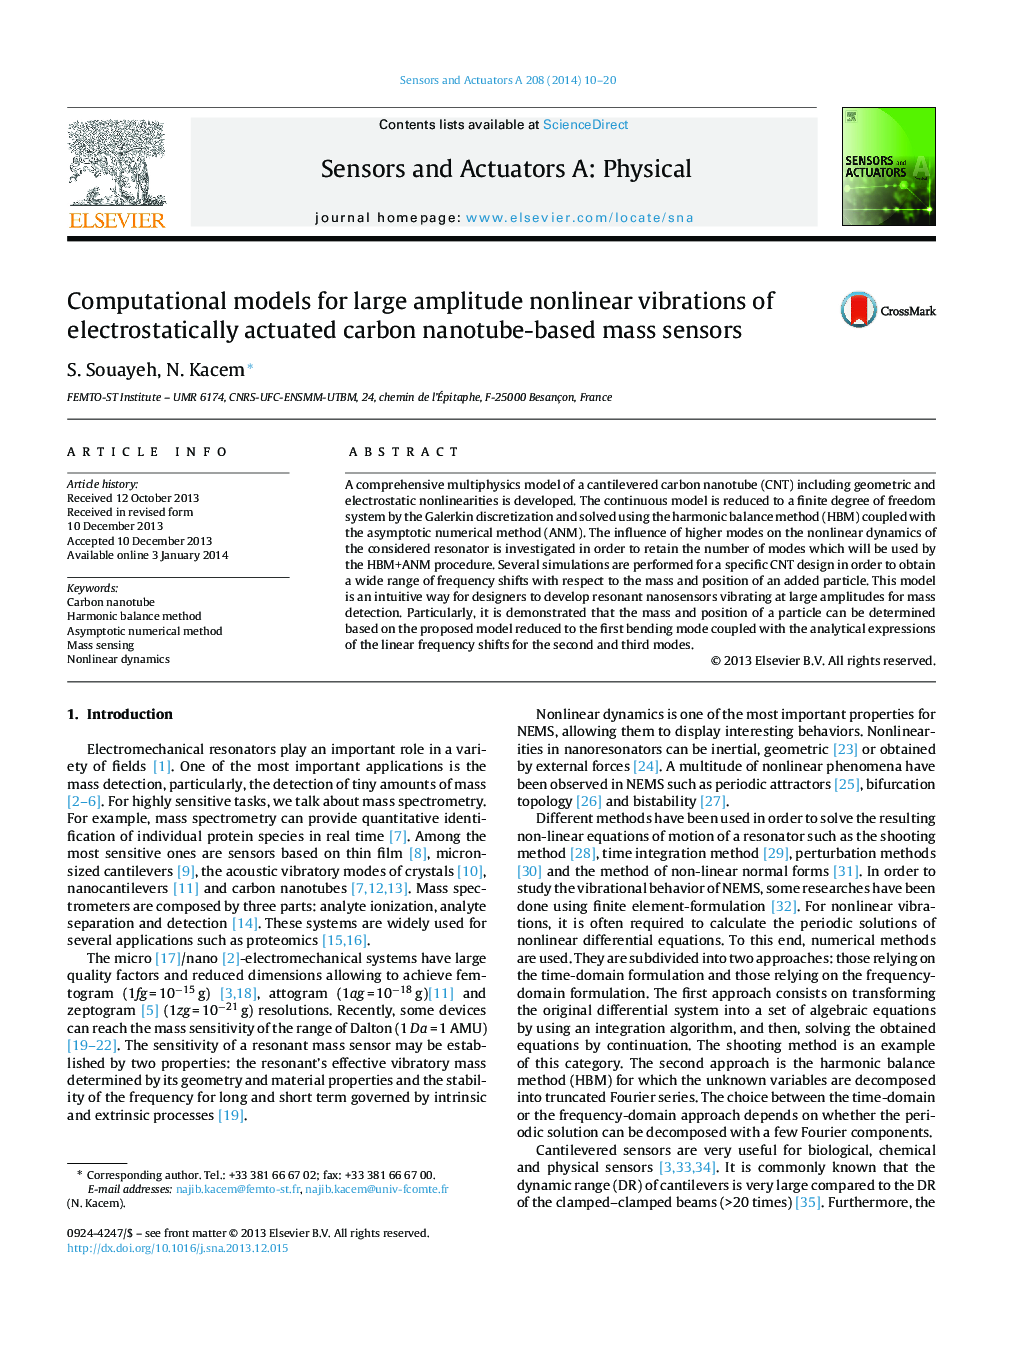 مدل های محاسباتی برای ارتعاشات غیر خطی دامنه وسیع از سنسورهای ماسه ای مبتنی بر نانولوله کربنی فعال الکترواستاتیک 